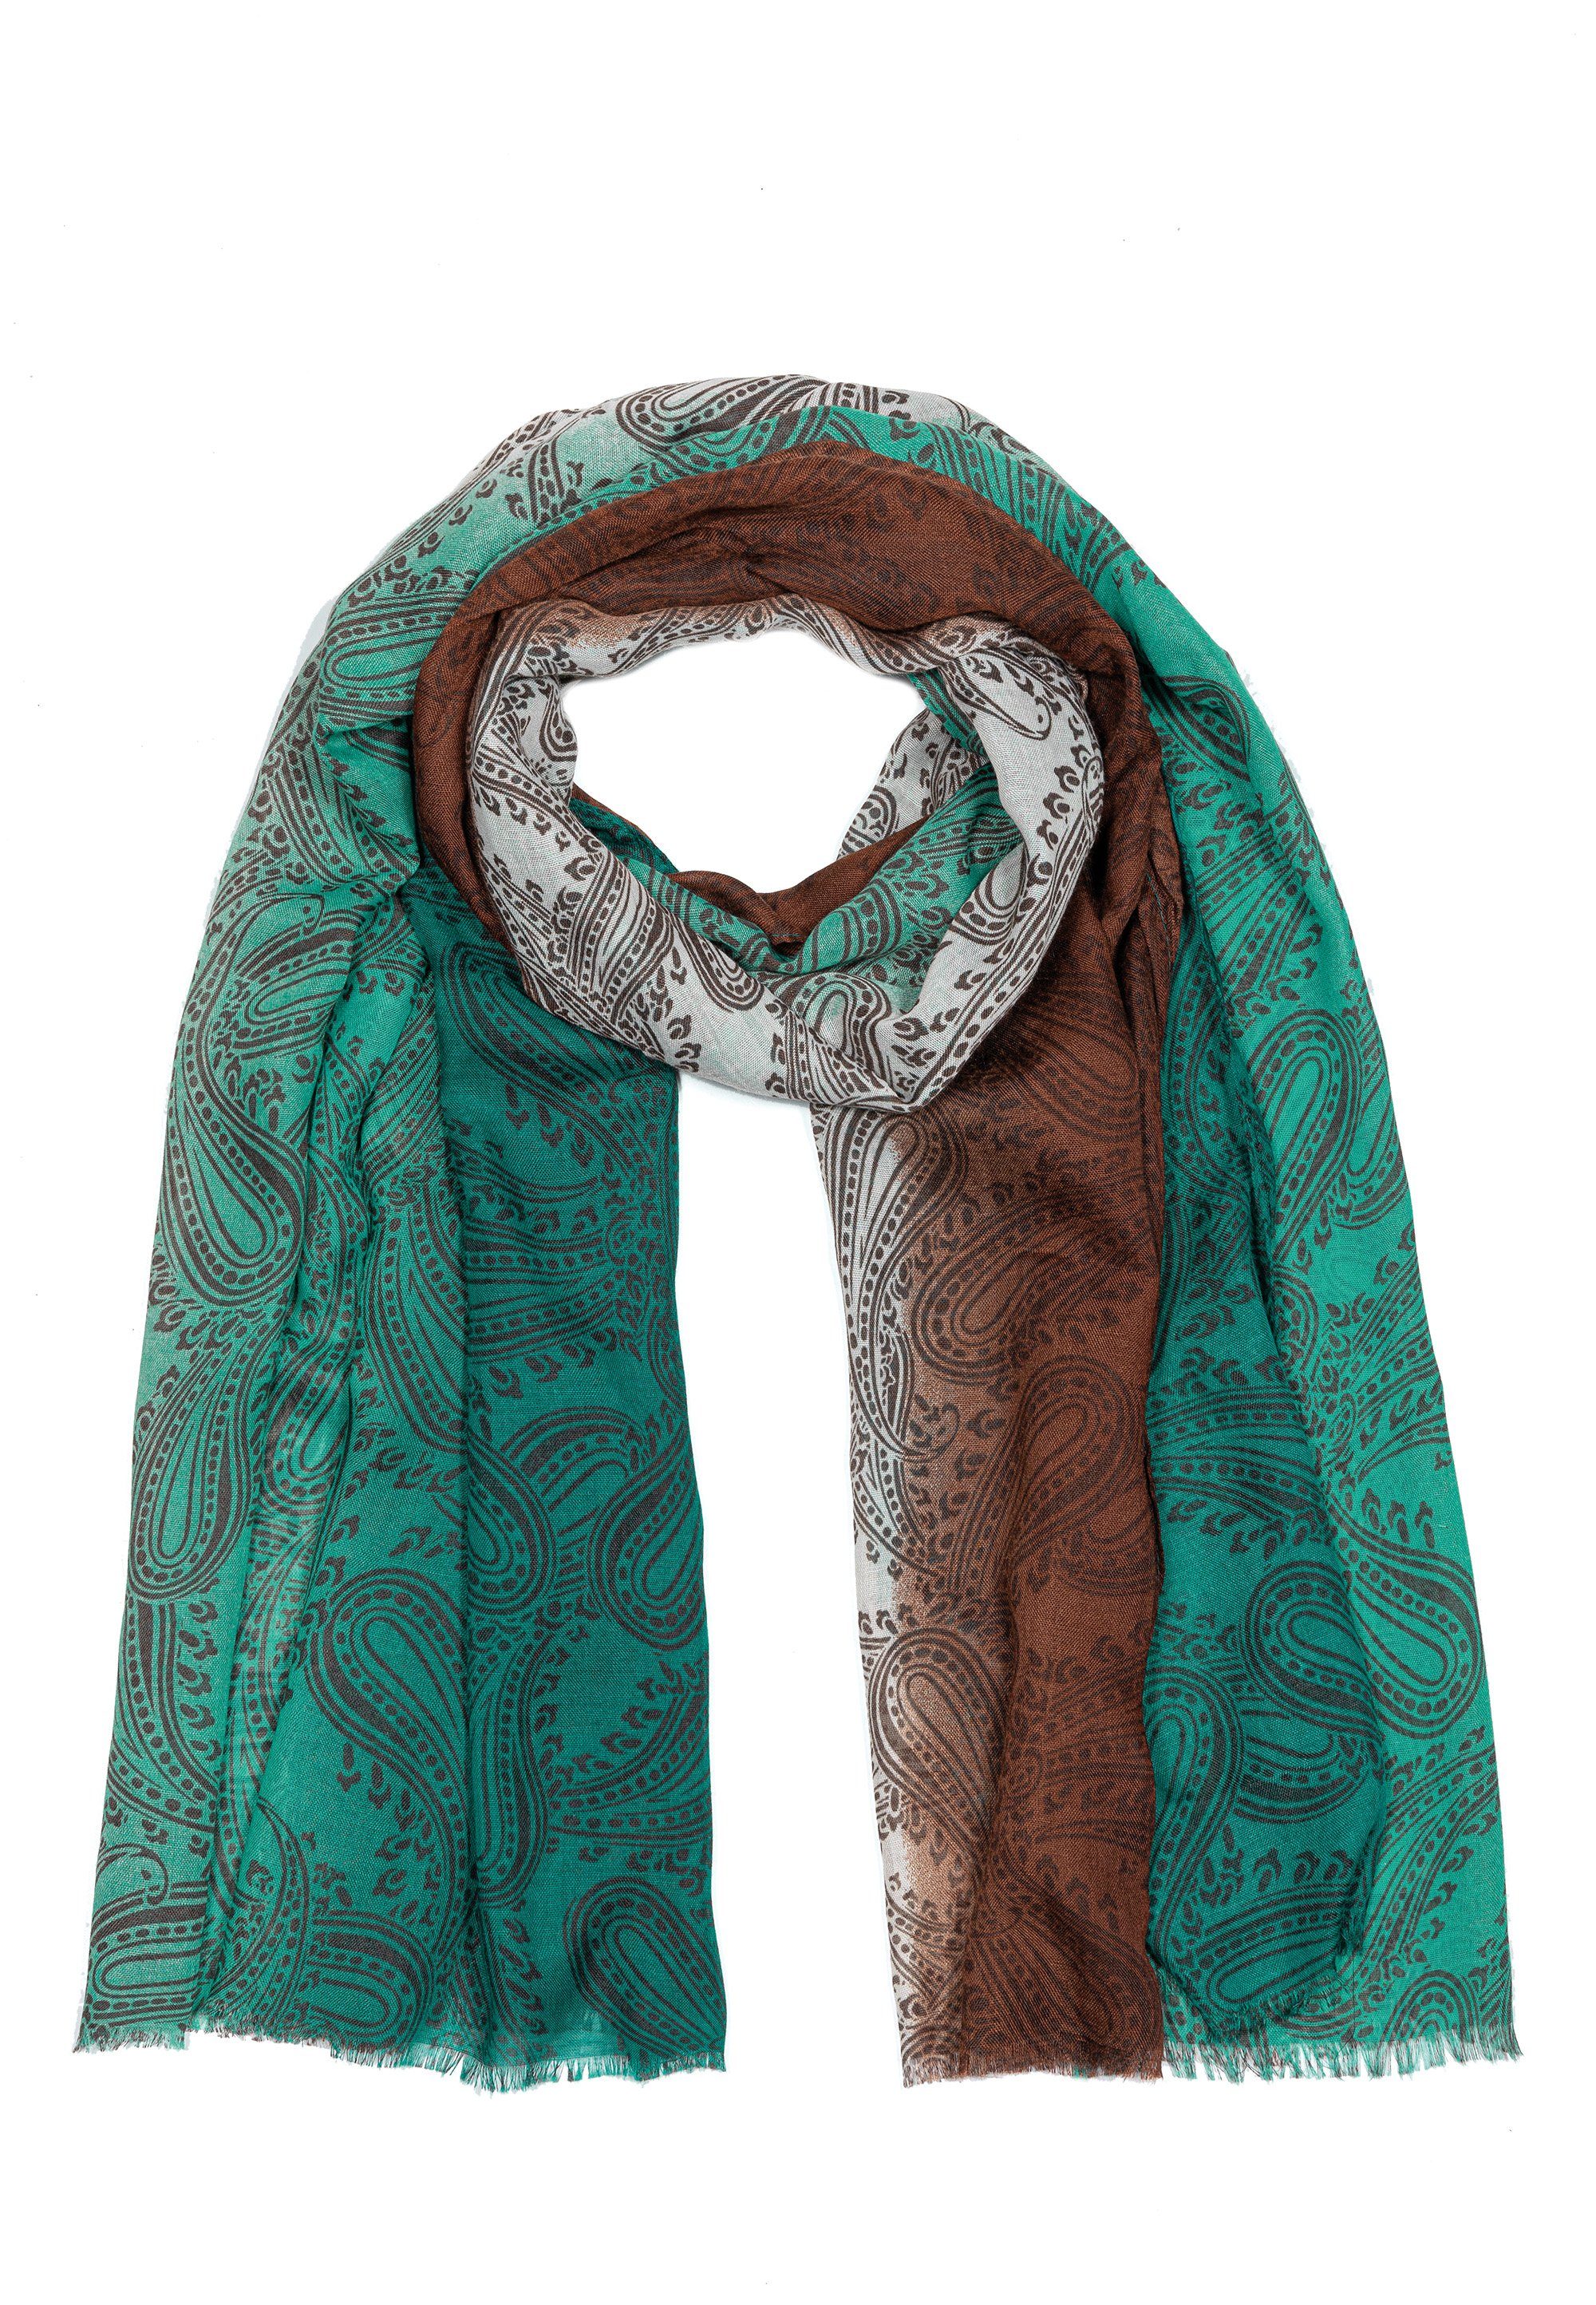 Design mit Damen Goodman hochwertiges Material hochwertige und Verarbeitung Farbspiel Modeschal Sehr Schoko Farben, tollen Schal